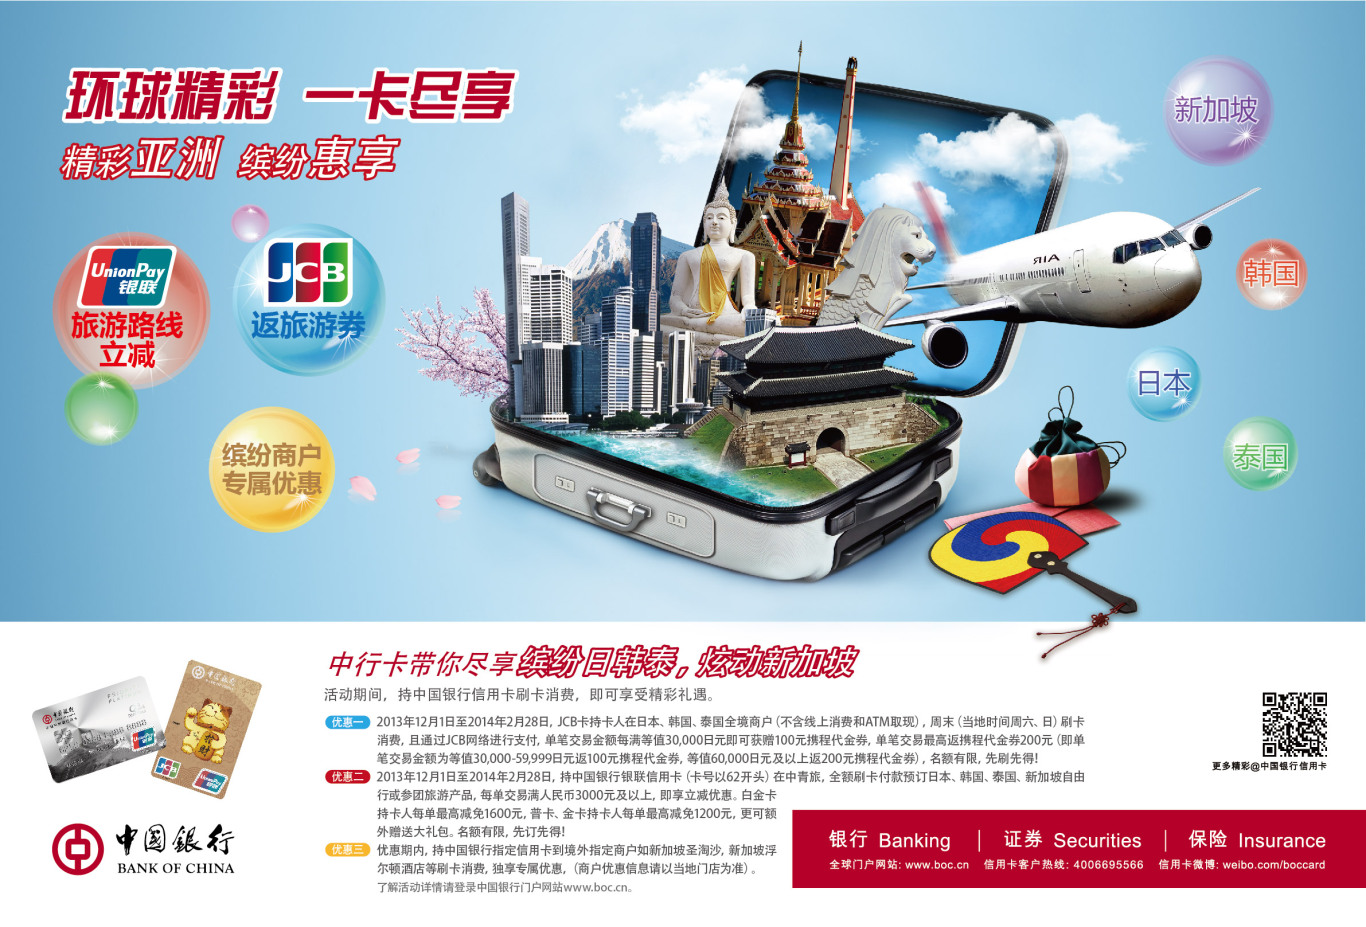 中国银行个人业务海报设计（包括信用卡分期、跨境消费、个人金融等等）图2